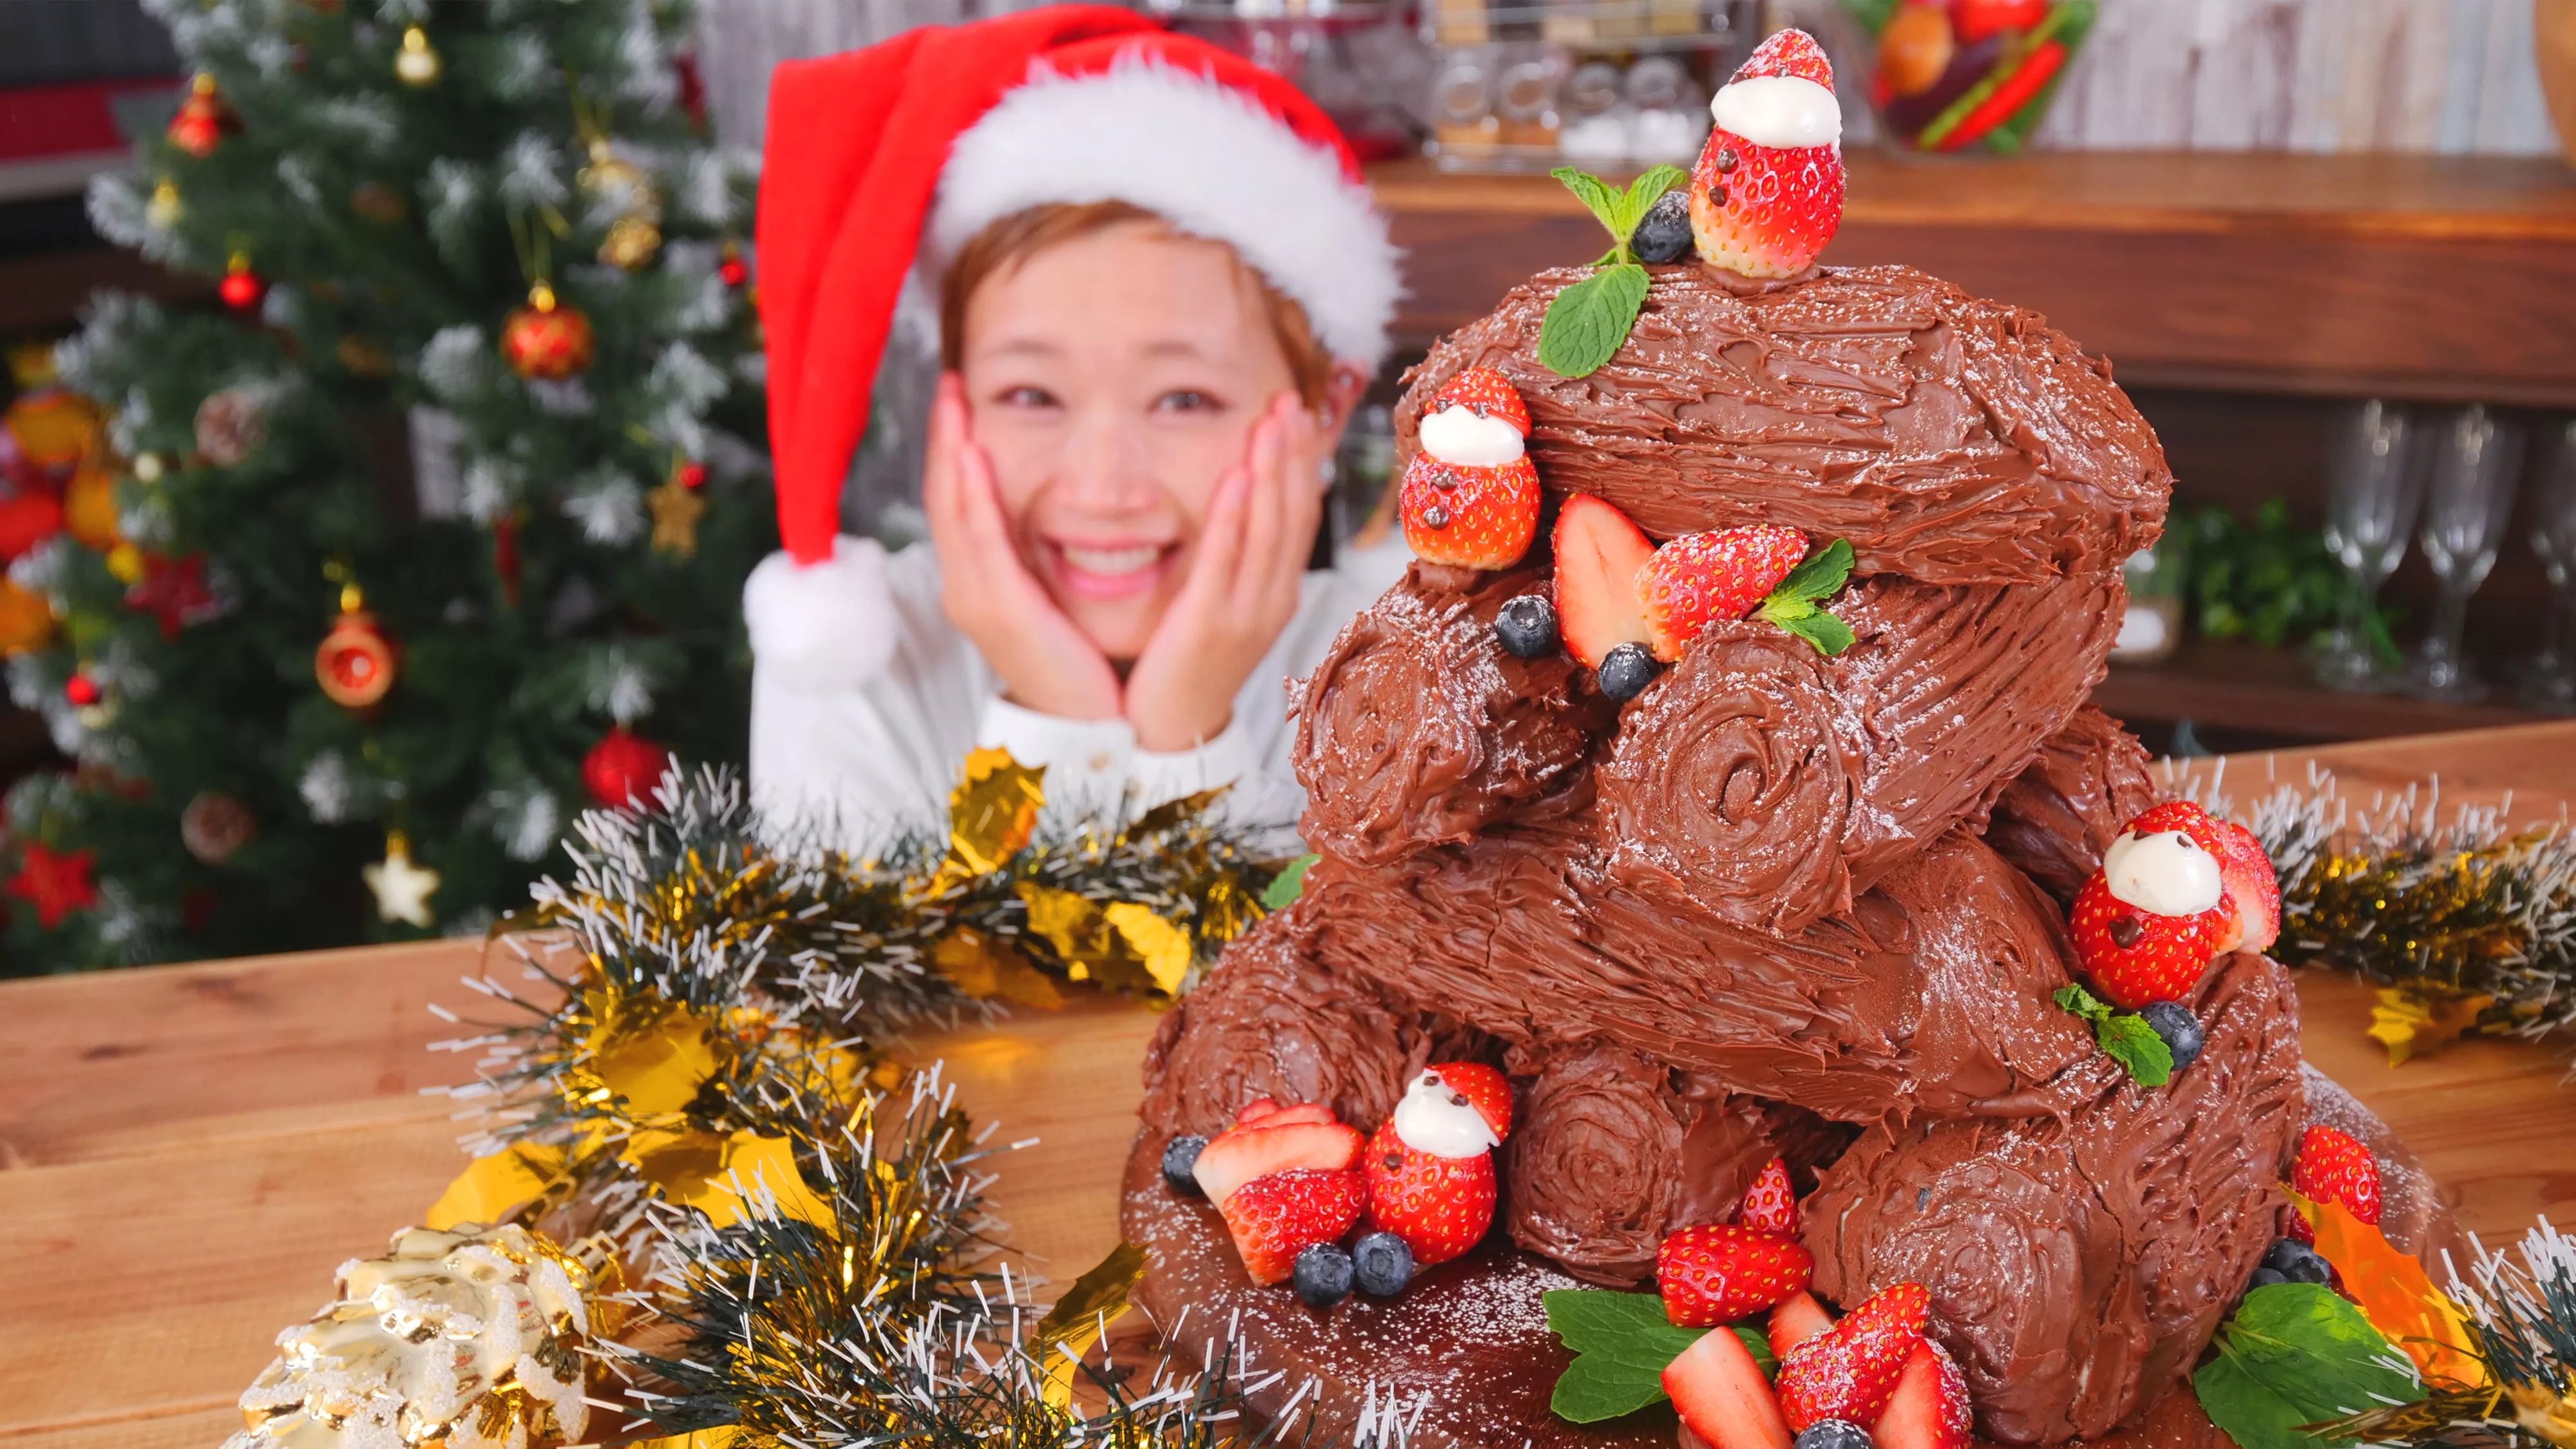 Big ブッシュドノエル 中身はお楽しみ シェアして楽しい 簡単 巨大クリスマスケーキ ロシアン佐藤 Party Kitchen